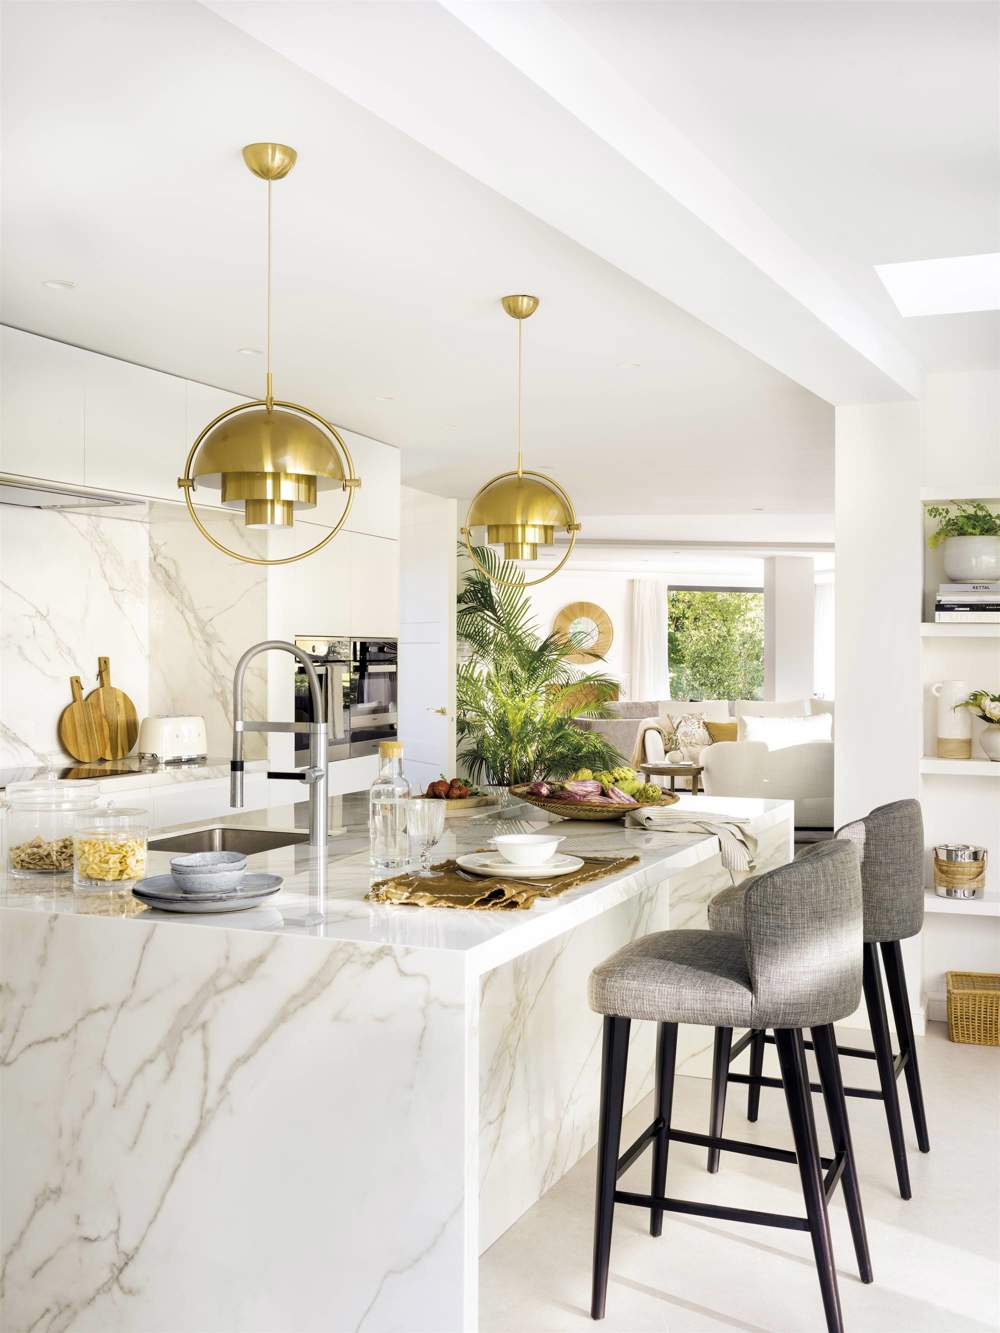 cocina moderna blanca con isla y revestimientos que imitan el marmol 00553582